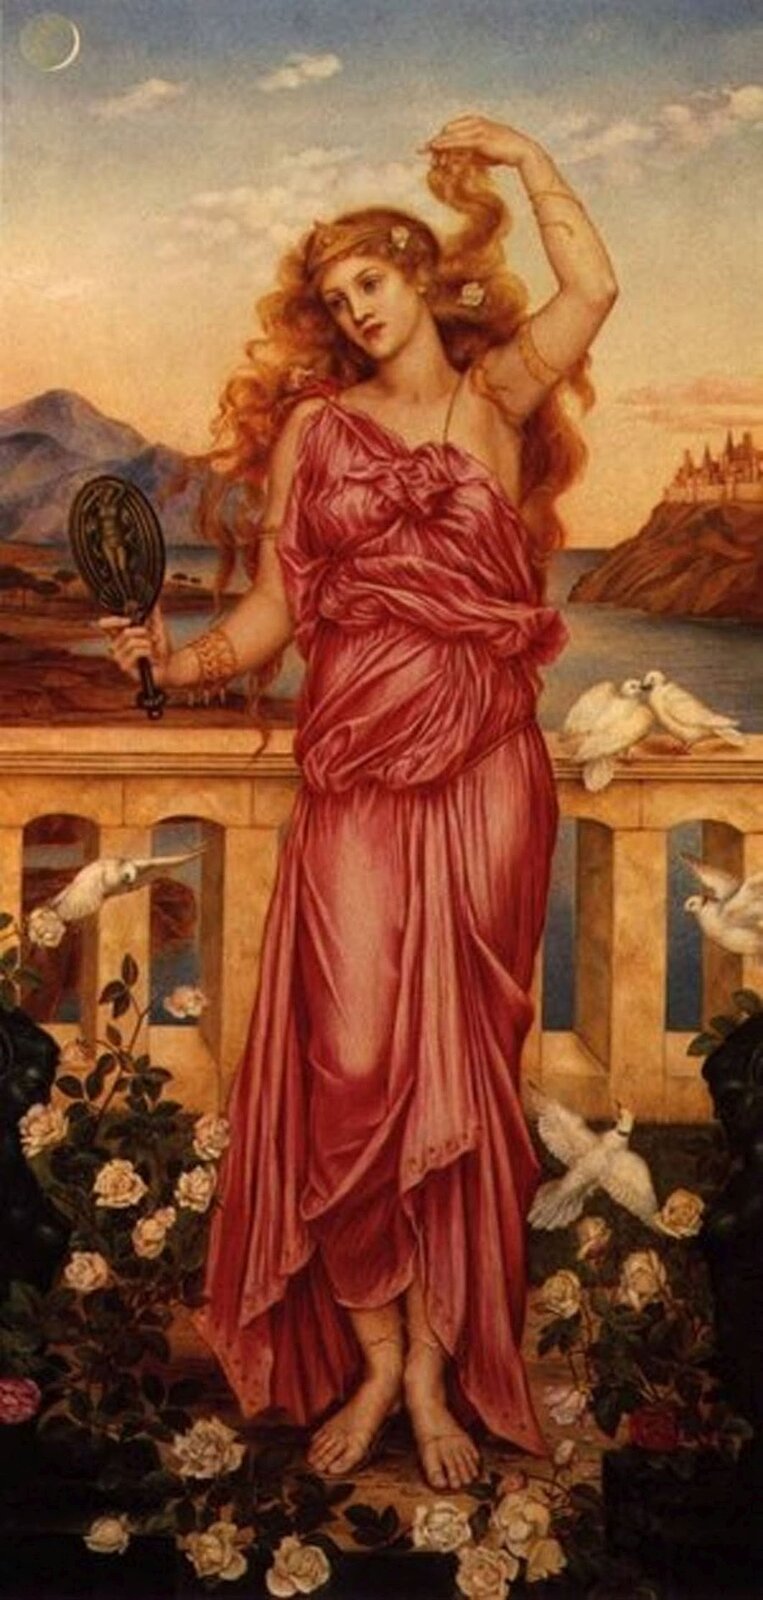 Ilustracja przedstawia obraz „Helena Trojańska” autorstwa Evelyn De Morgan. Obraz ukazuje piękną kobietę w czerwonej szacie. Helena przegląda się z lusterku. W tle widać morze oraz góry.